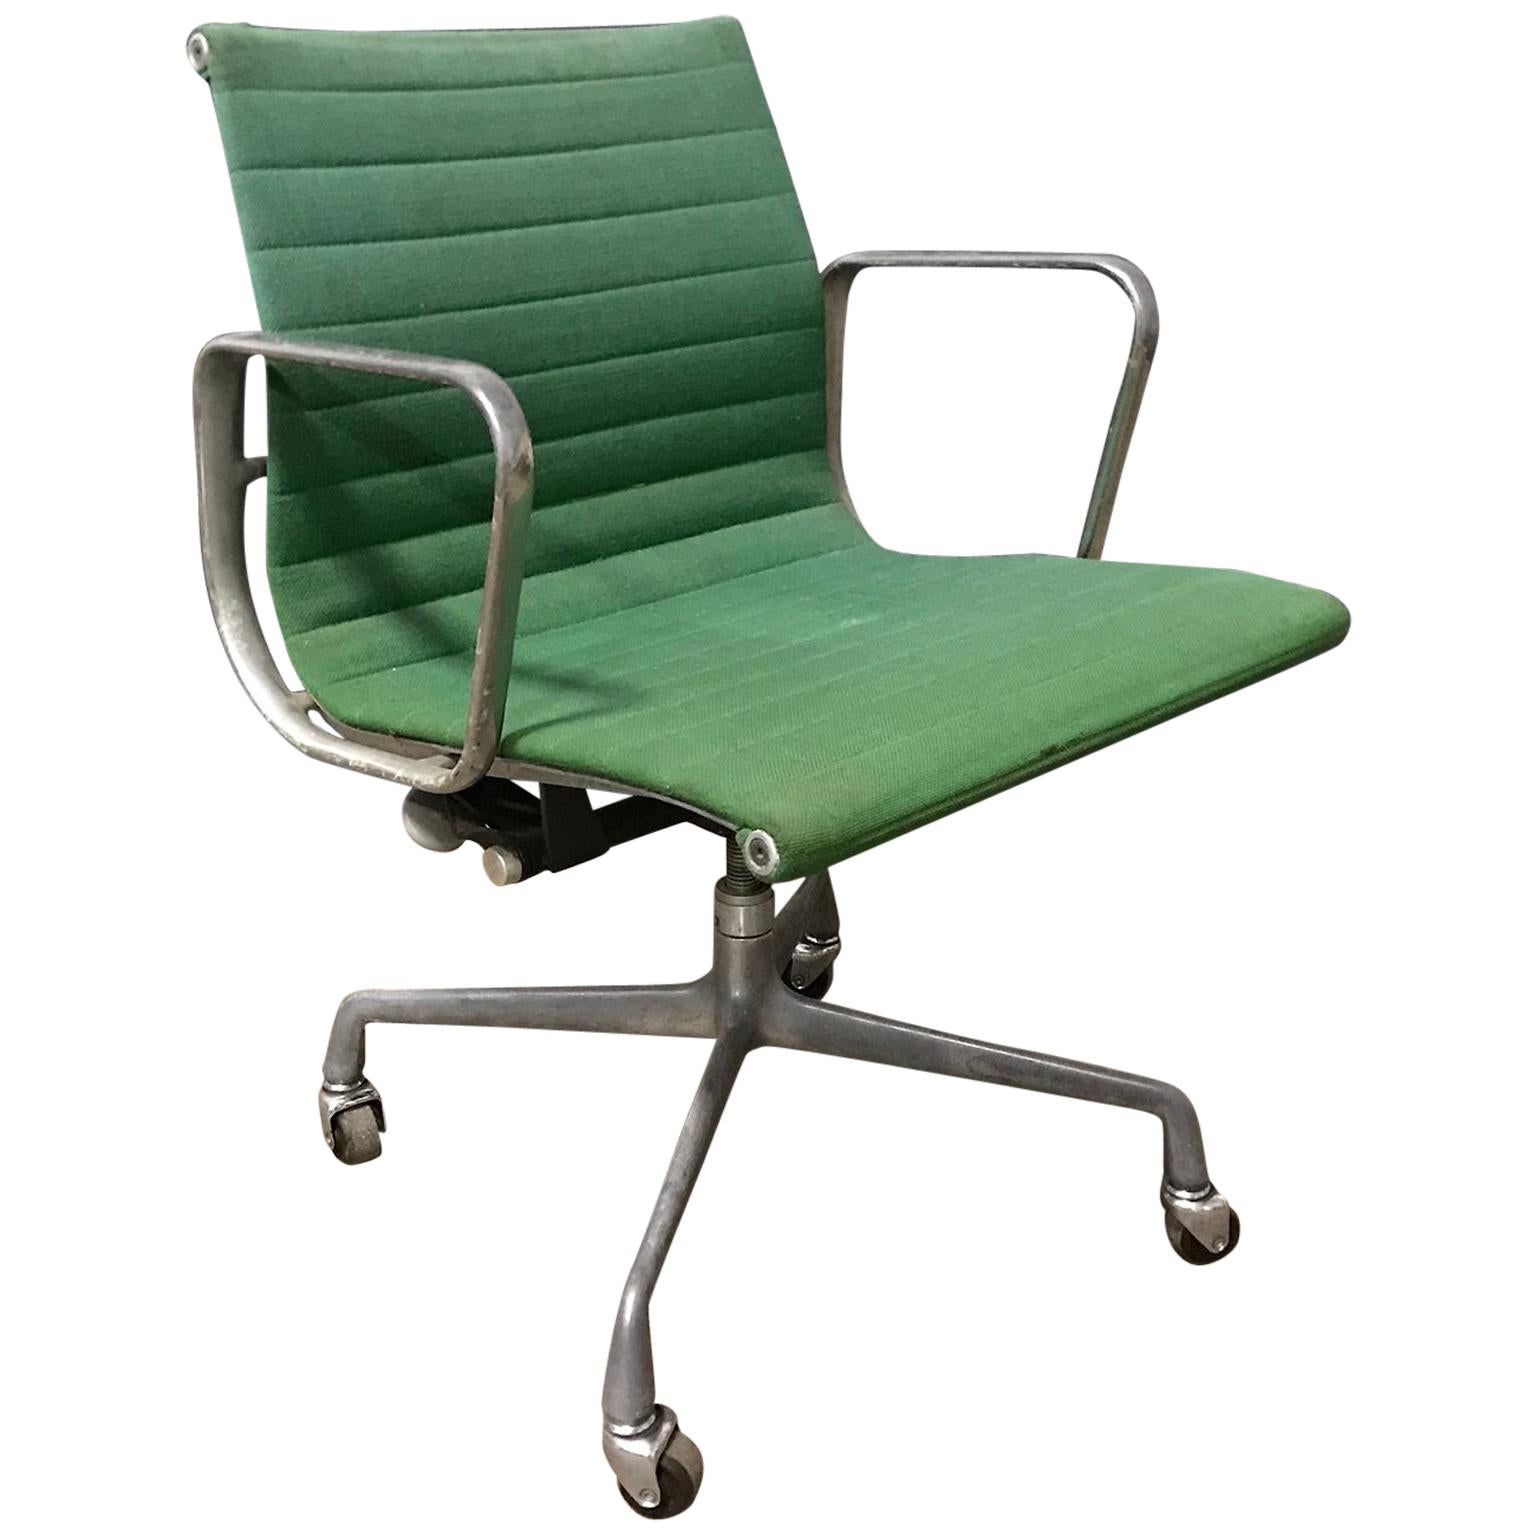 Ray & Charles Eames for Herman Miller Full Option Rare Green Desk Chair, 1958 For Sale